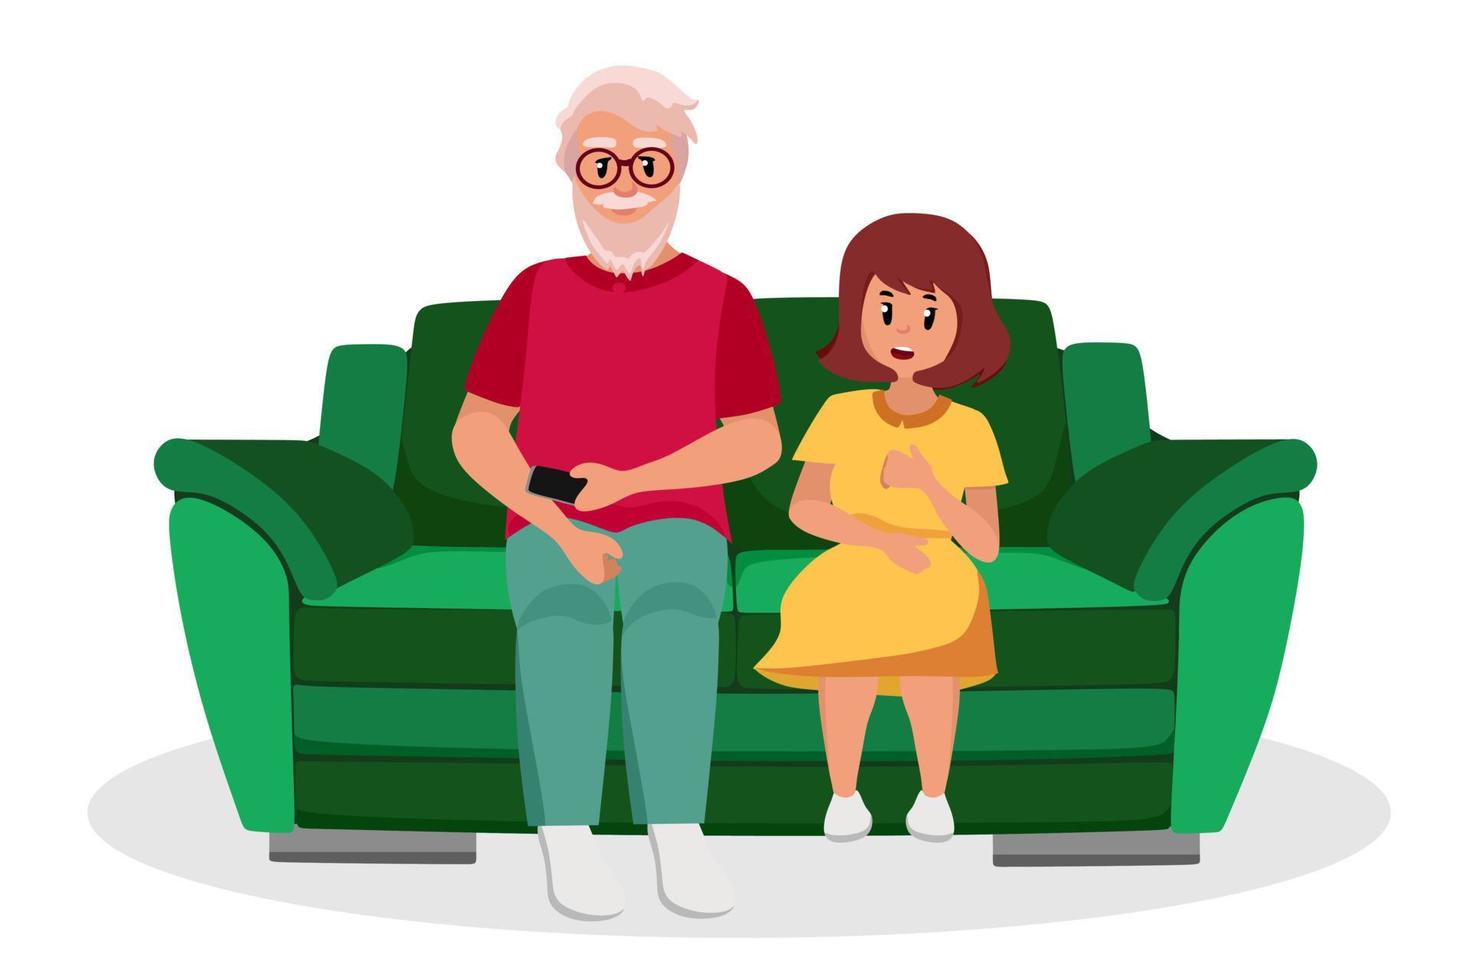 de oudere man is een opa met een kleindochter die op de bank zit. ouderen zijn stripfiguren. oude leeftijd. vectorillustratie van een vlakke stijl, geïsoleerd op een witte achtergrond vector